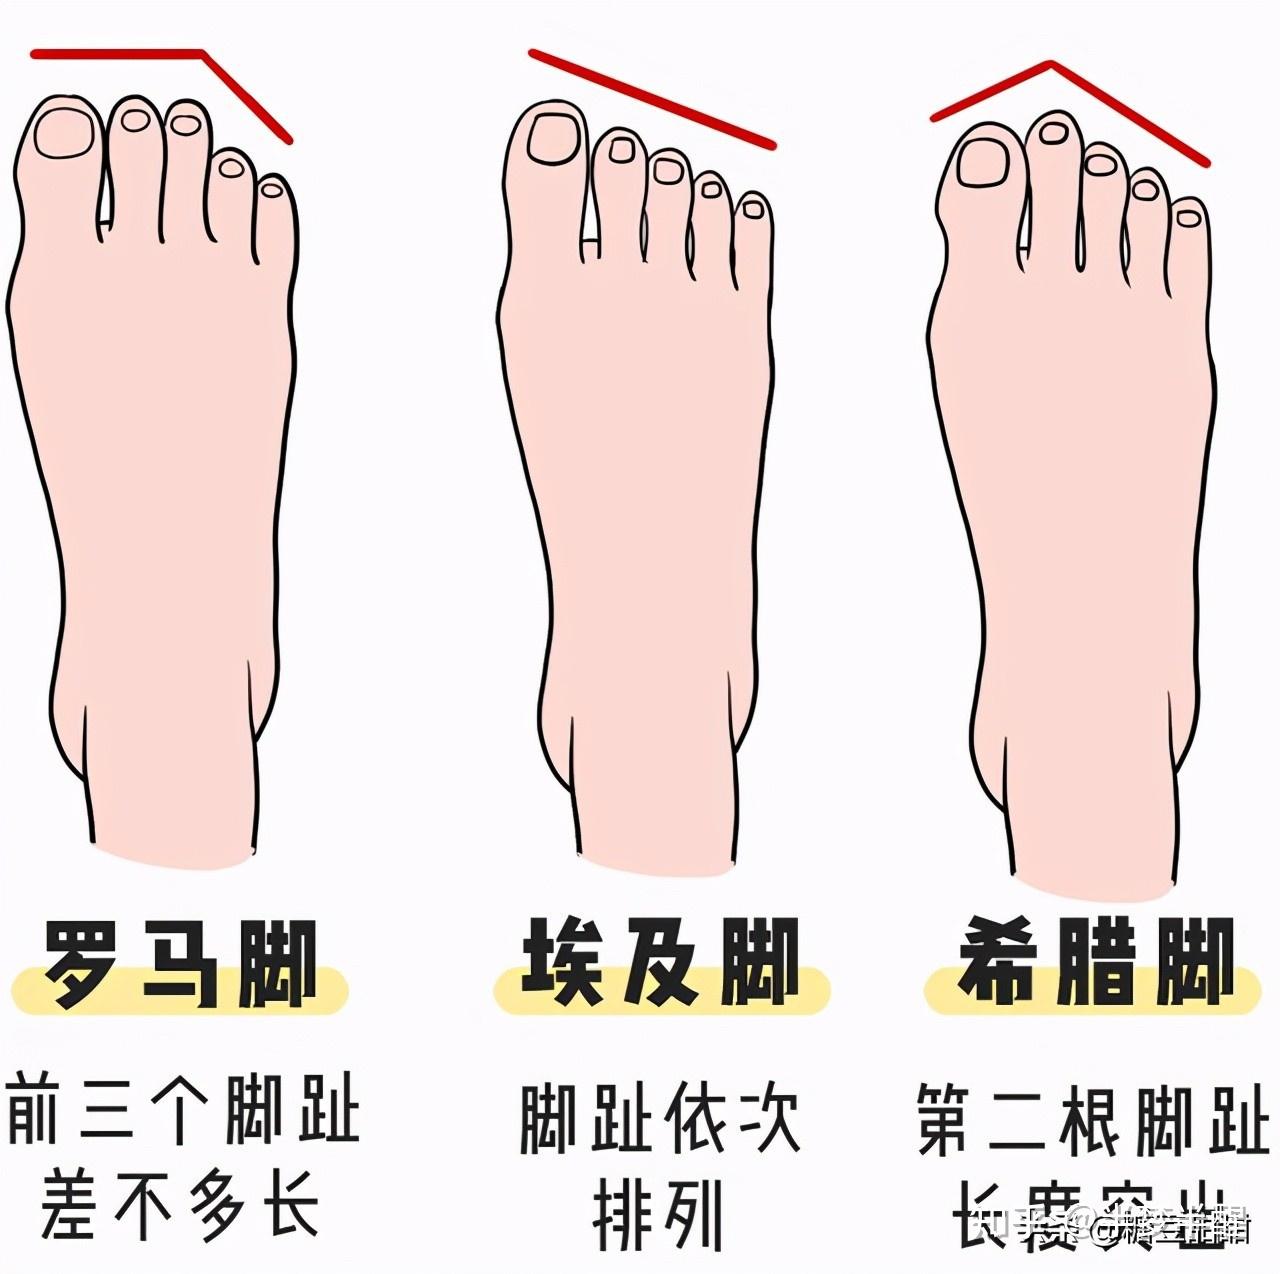 根据这图的对比,可以看出来,罗马脚属于前三个脚趾差不多长而后两根